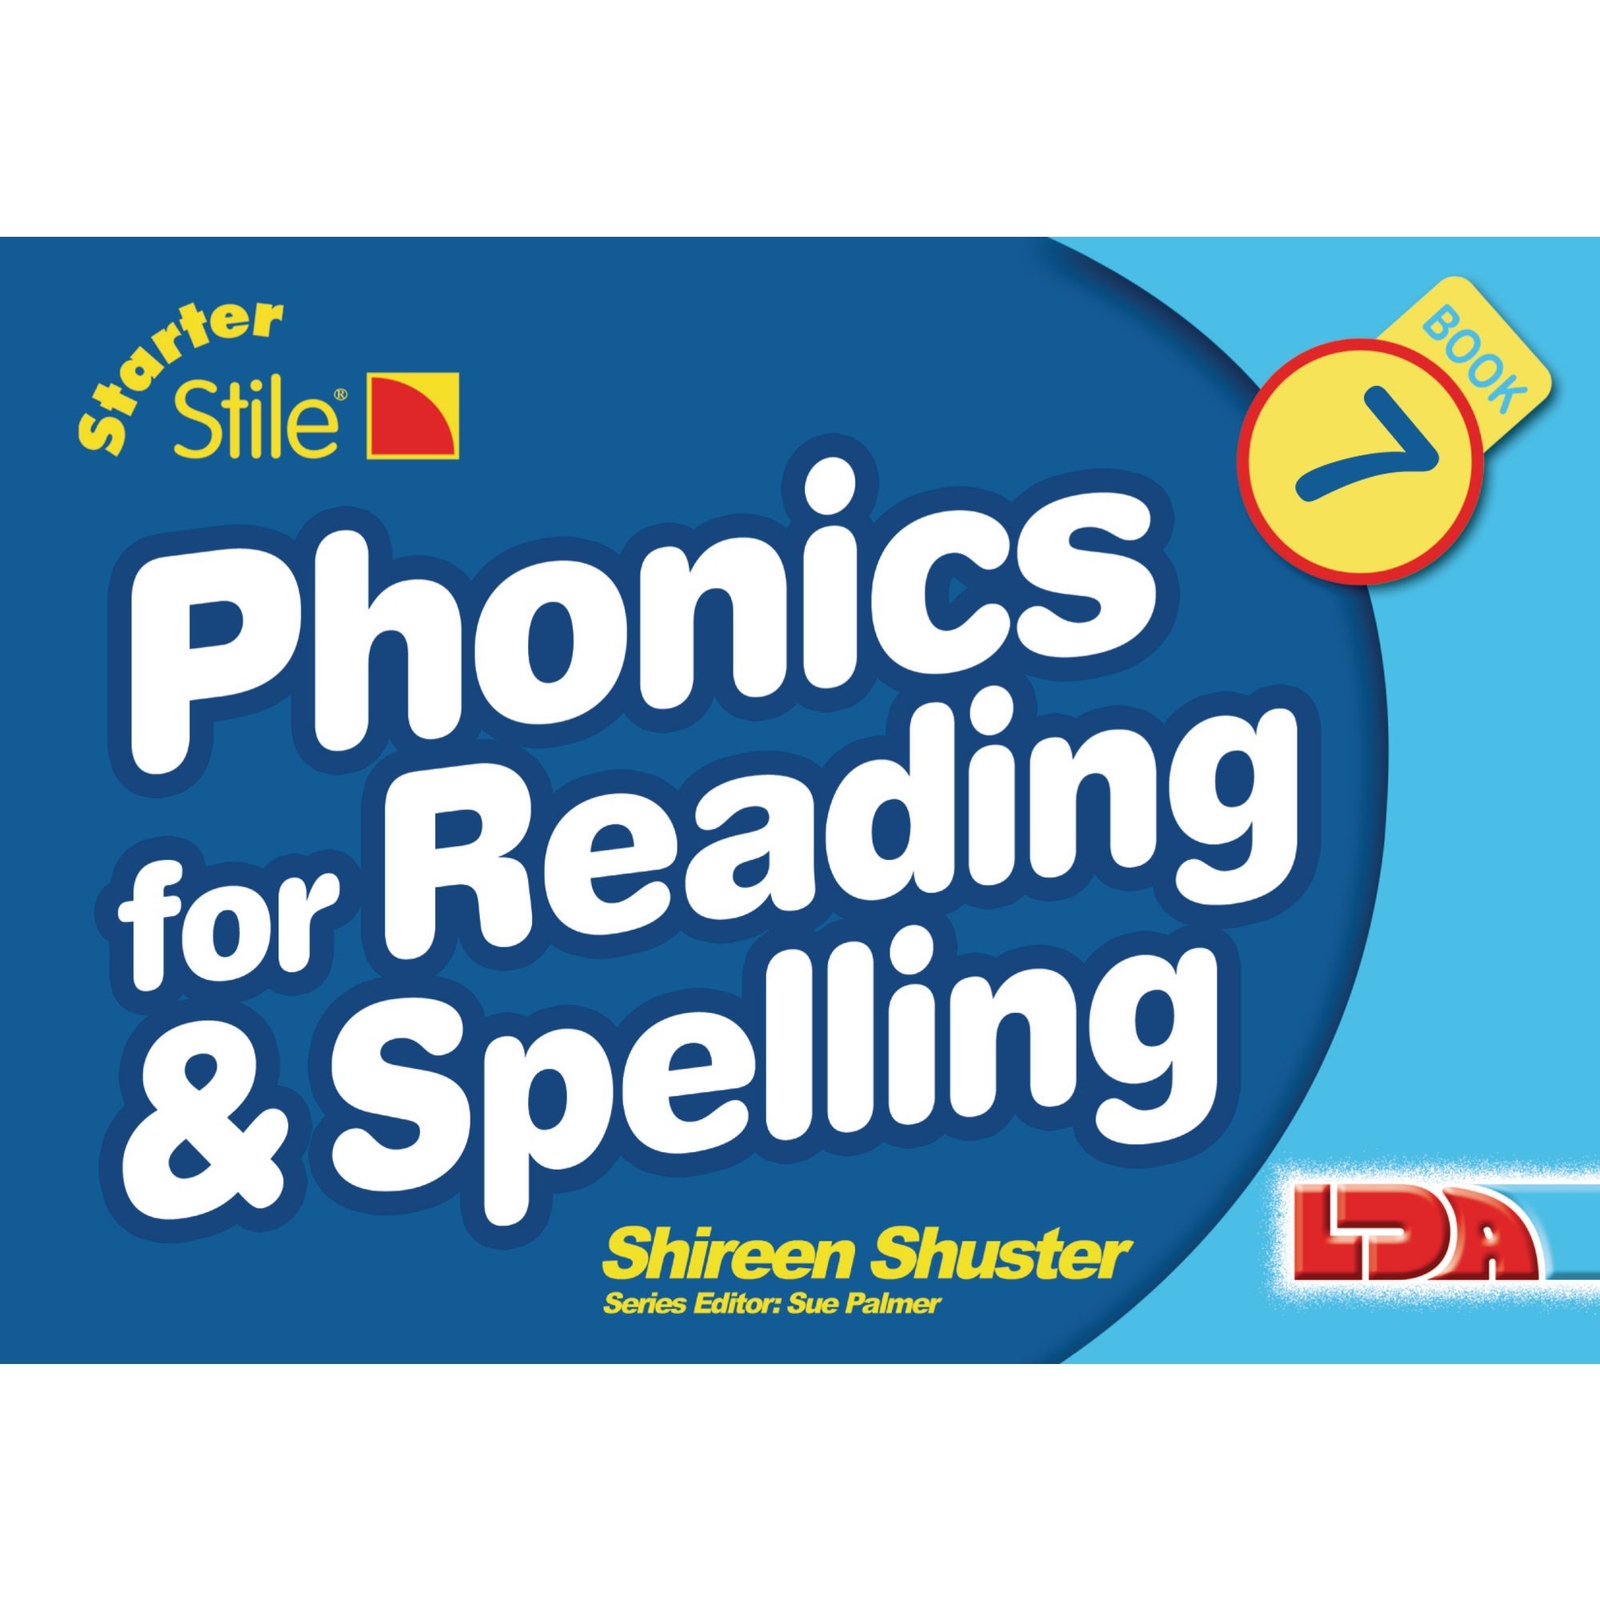 Starter Stile Phonics for Reading & Spelling Books 7-12 Multipack - Per Set